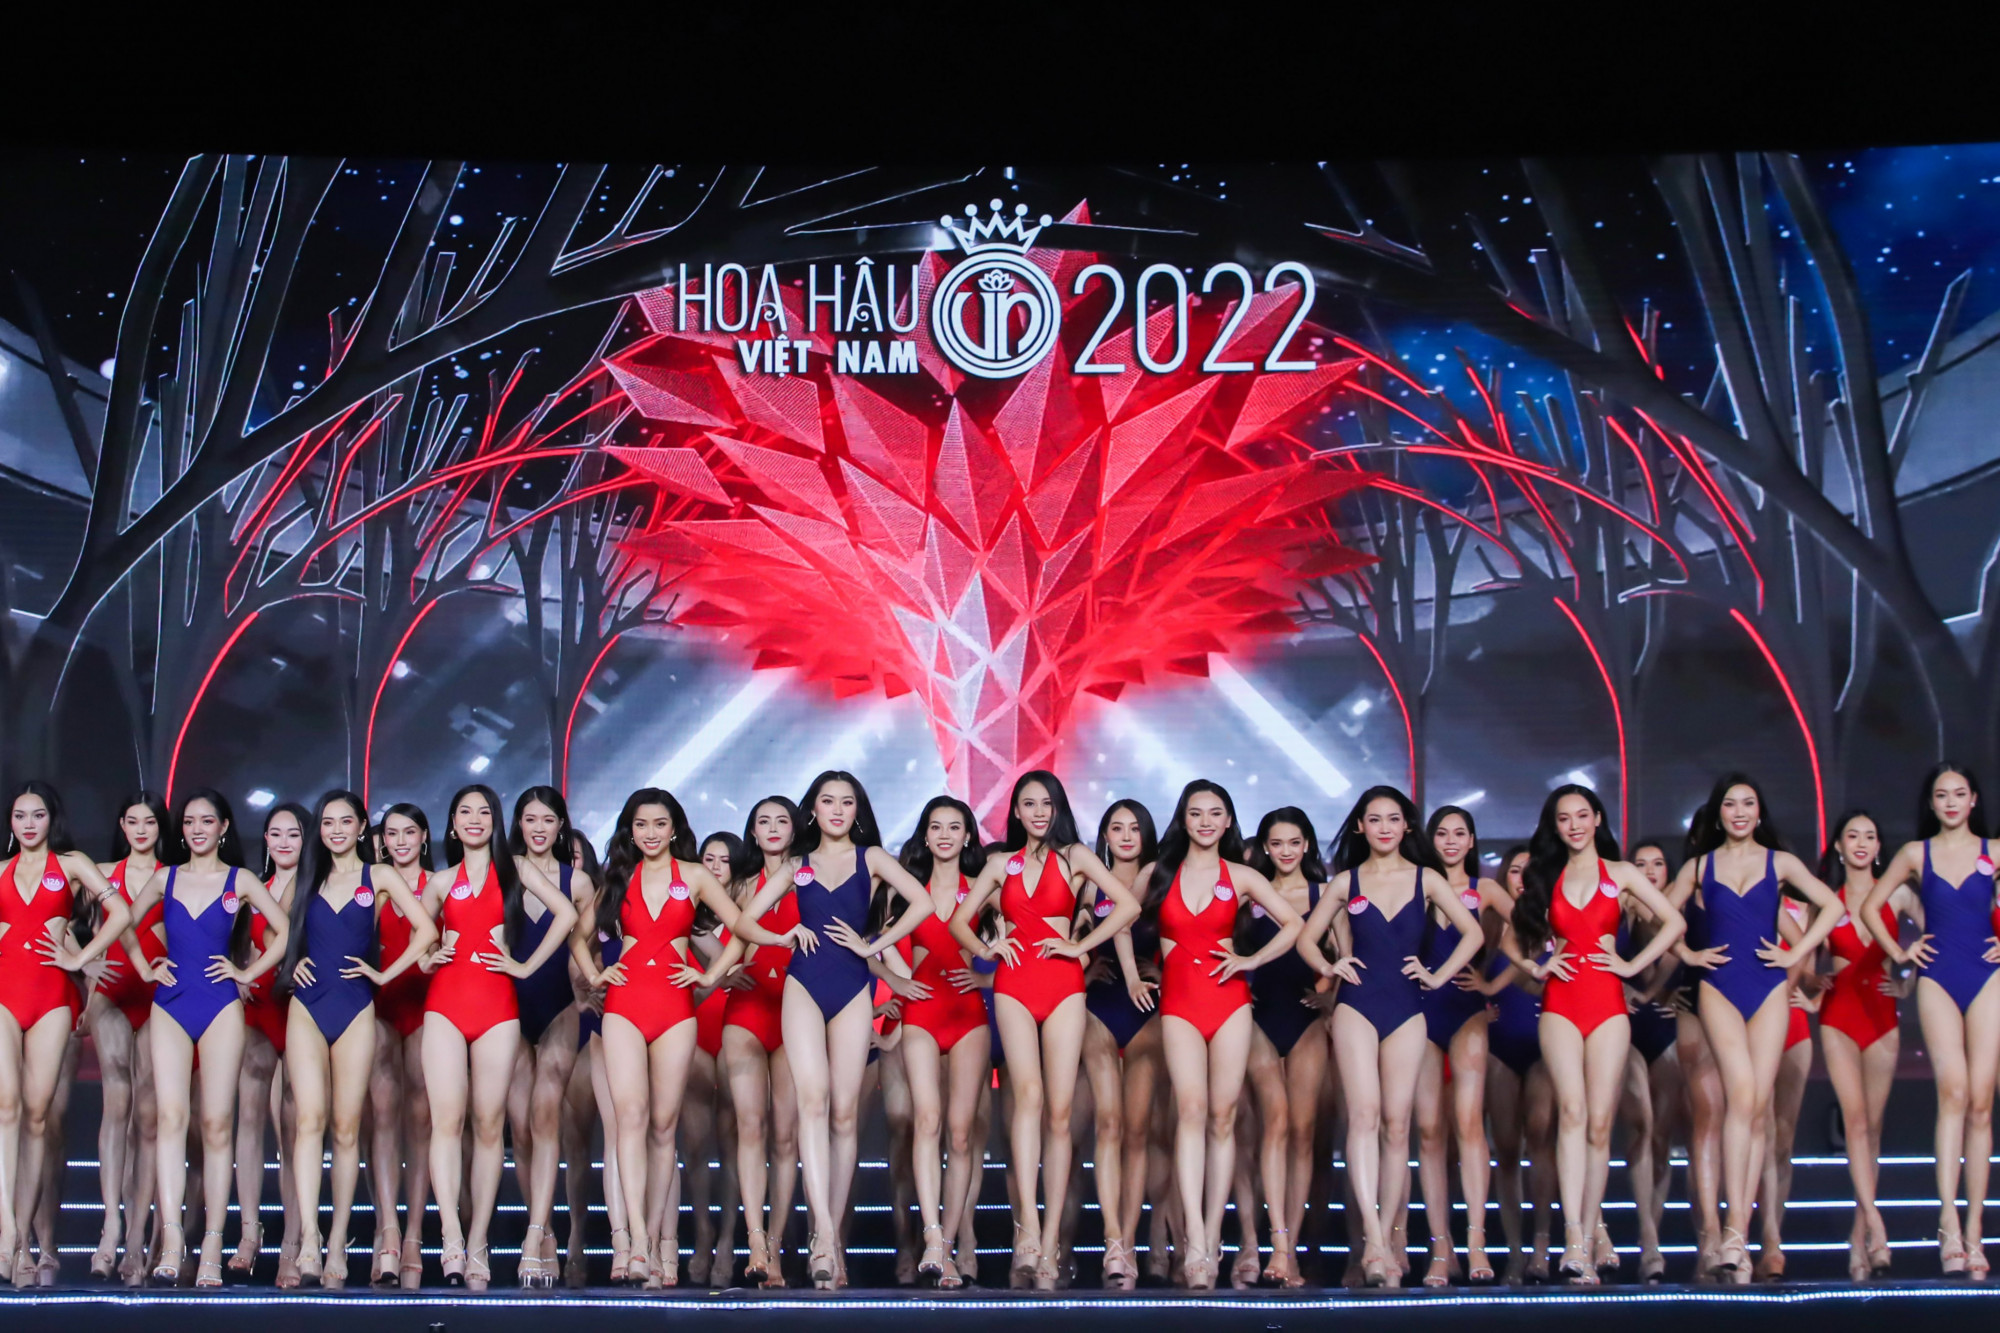 Điểm trừ trong đêm chung khảo Hoa hậu Việt Nam 2022